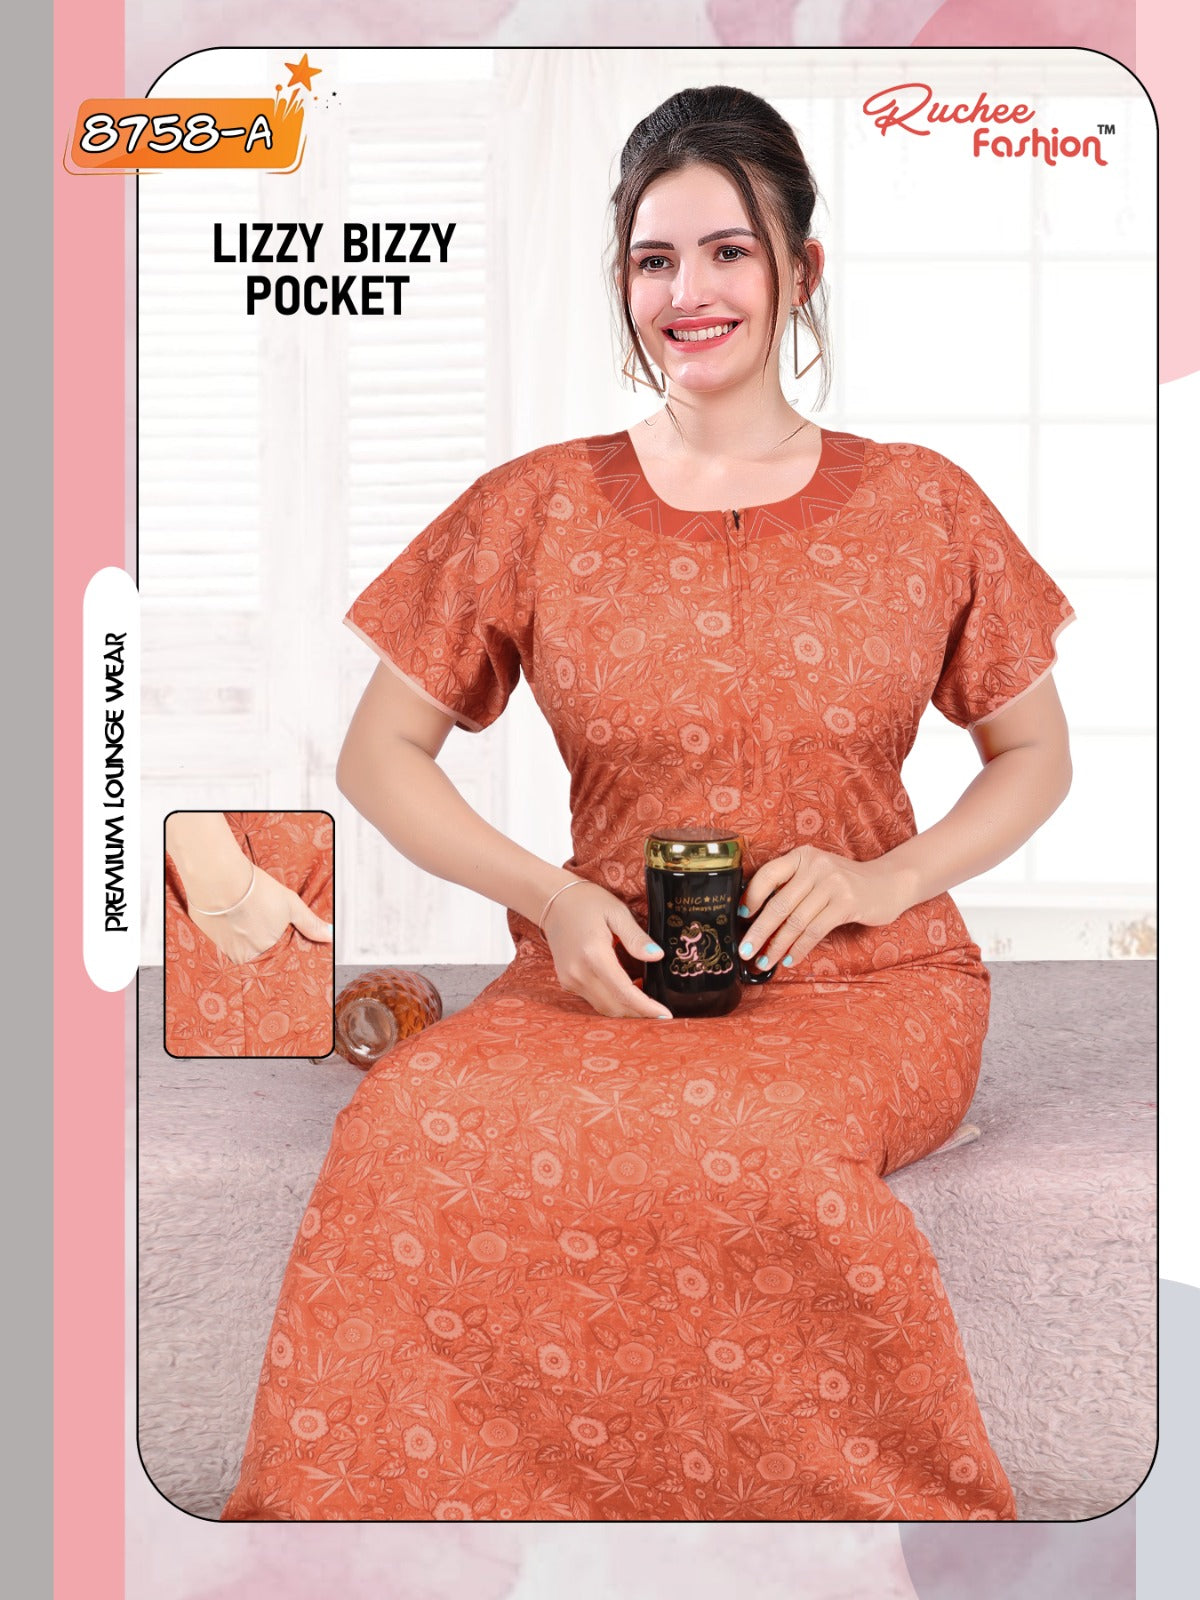 Lizzy Bizzy 150324 Ruchee Fashion Lizzy Bizzy Night Gowns